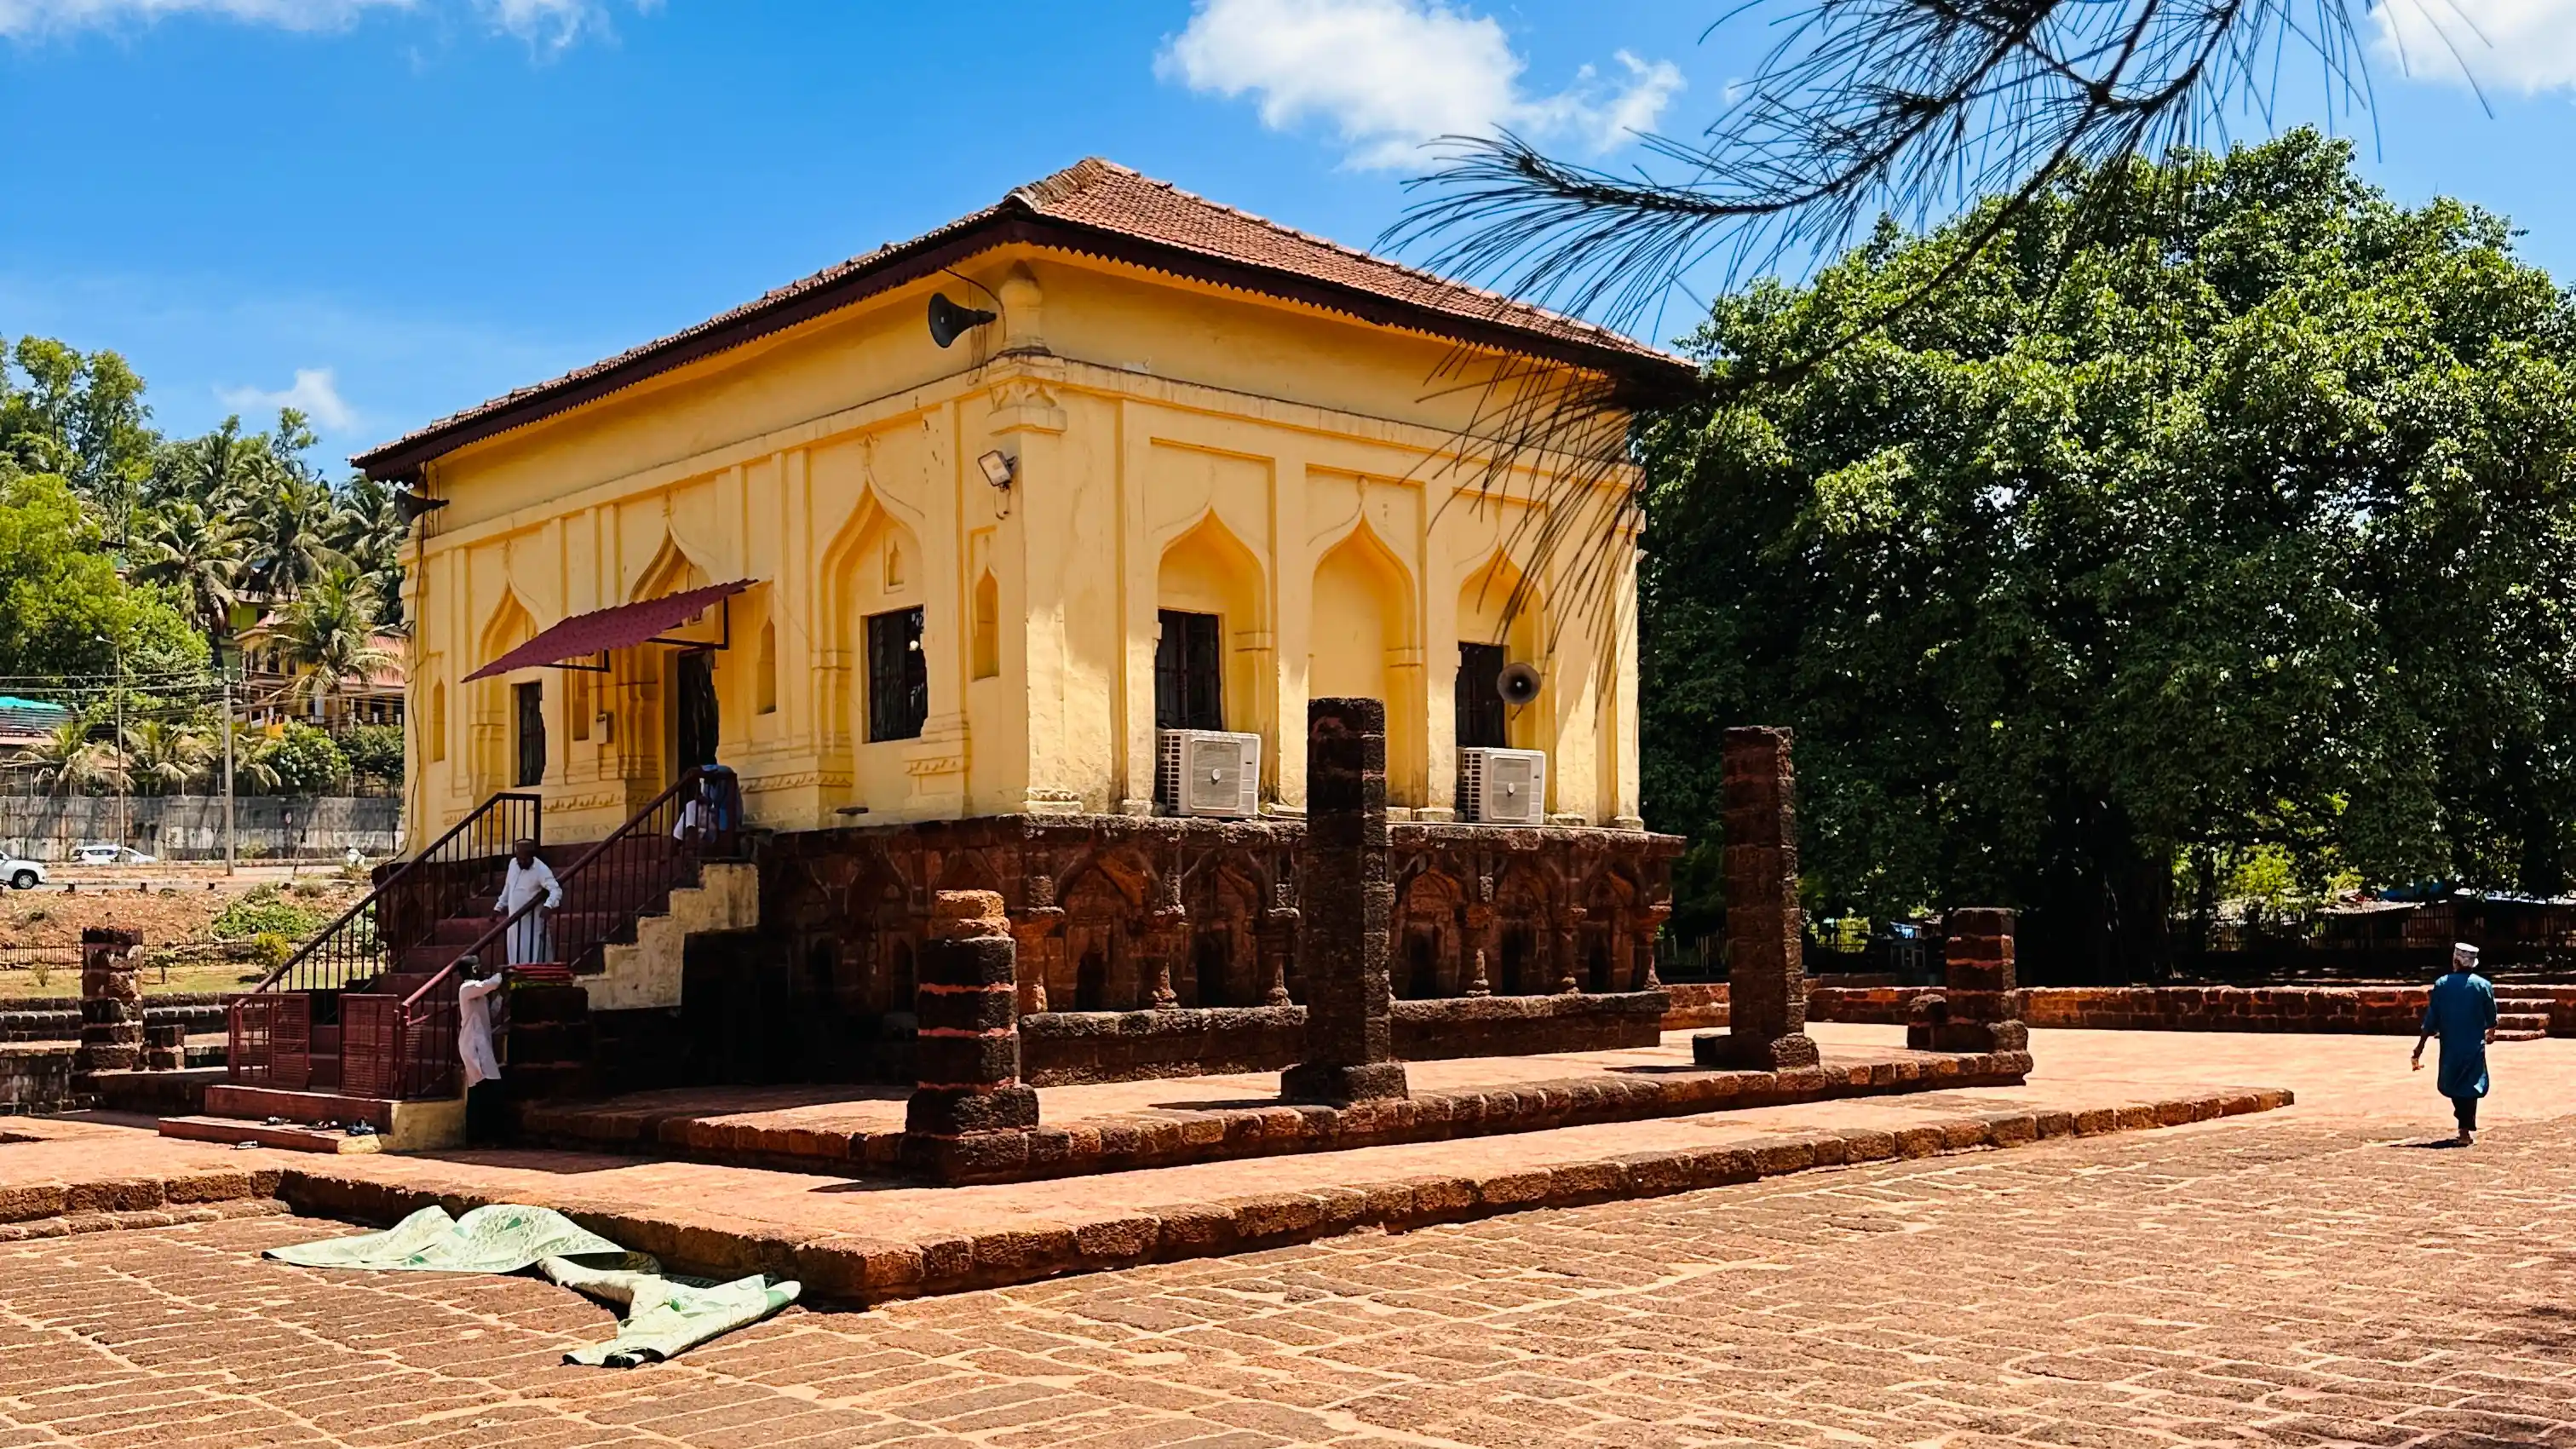 Safa Masjid Goa: A Glimpse into Goa's Islamic Heritage